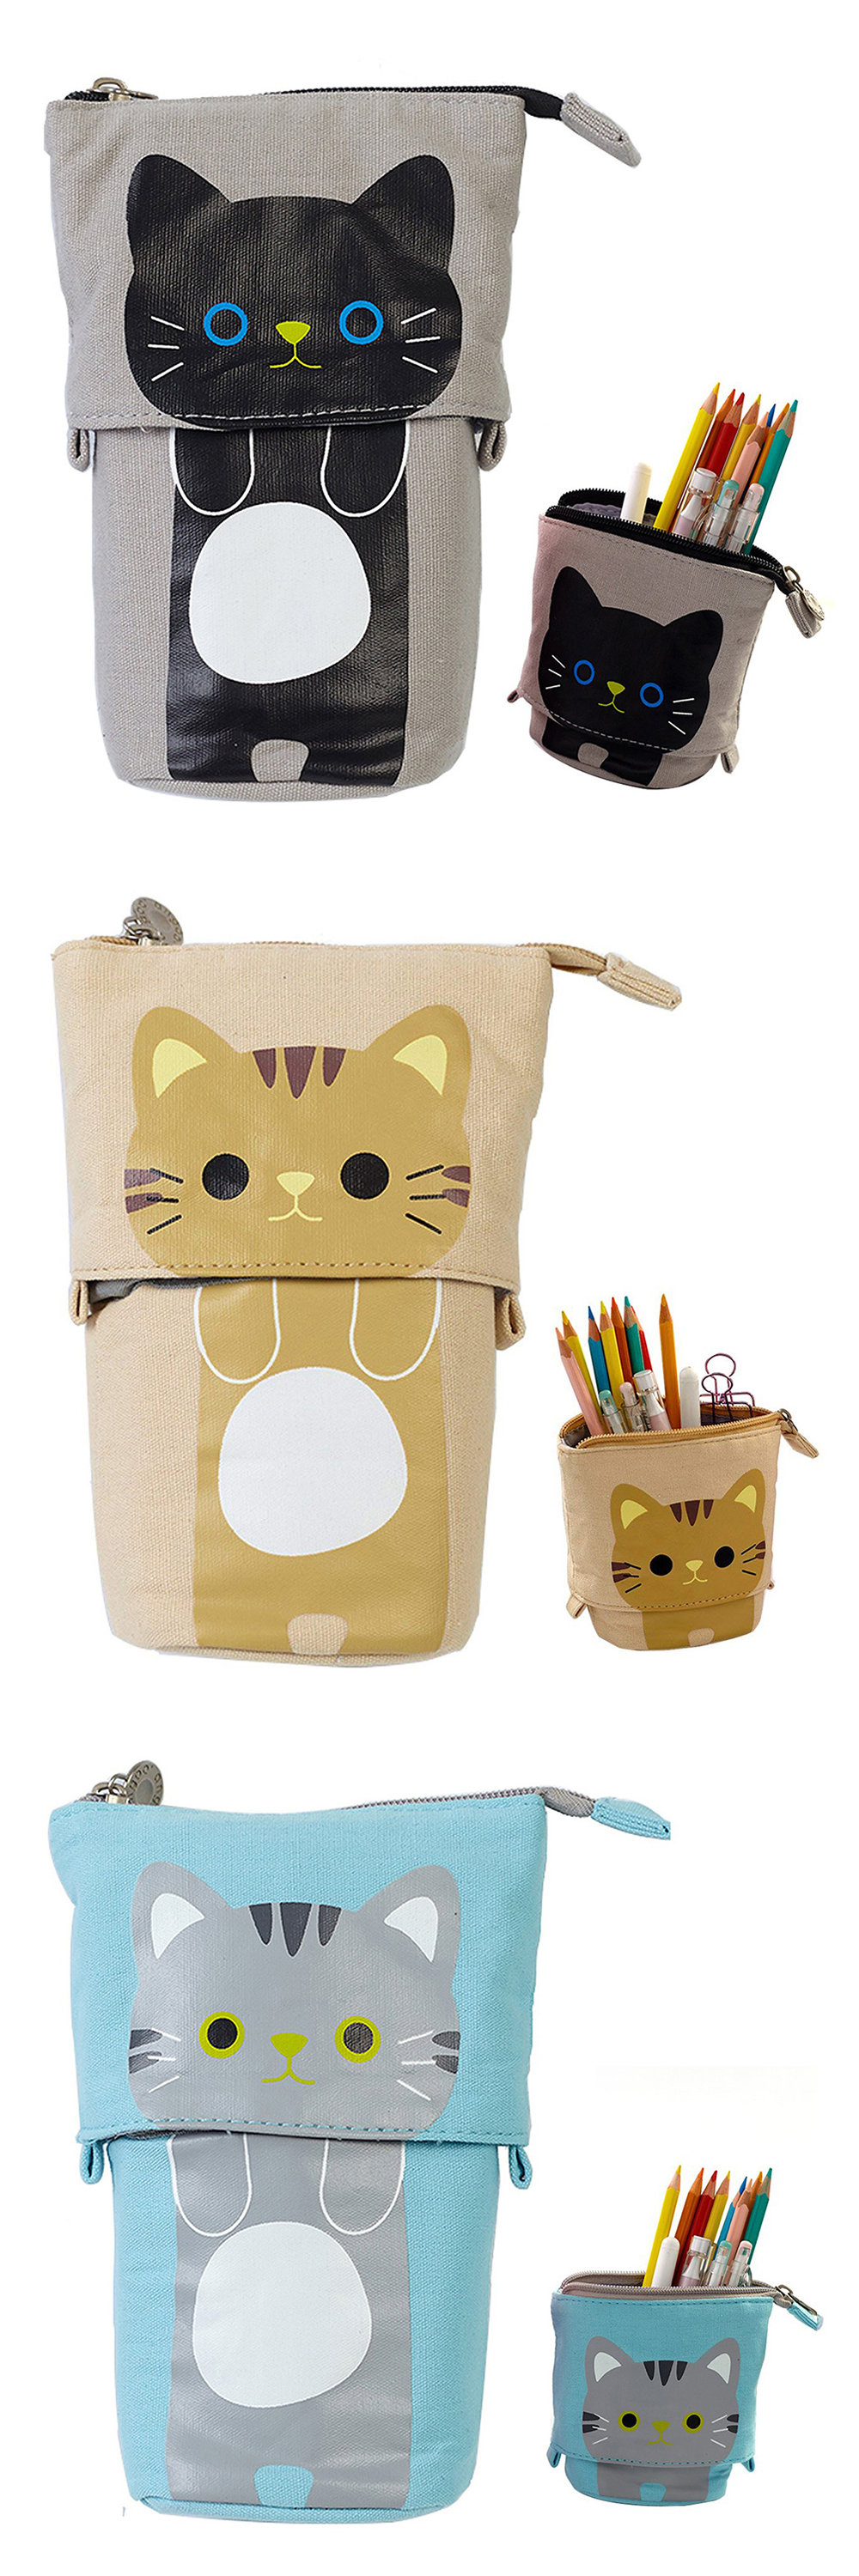 Children's Cat Pencil Case, cat pencil case